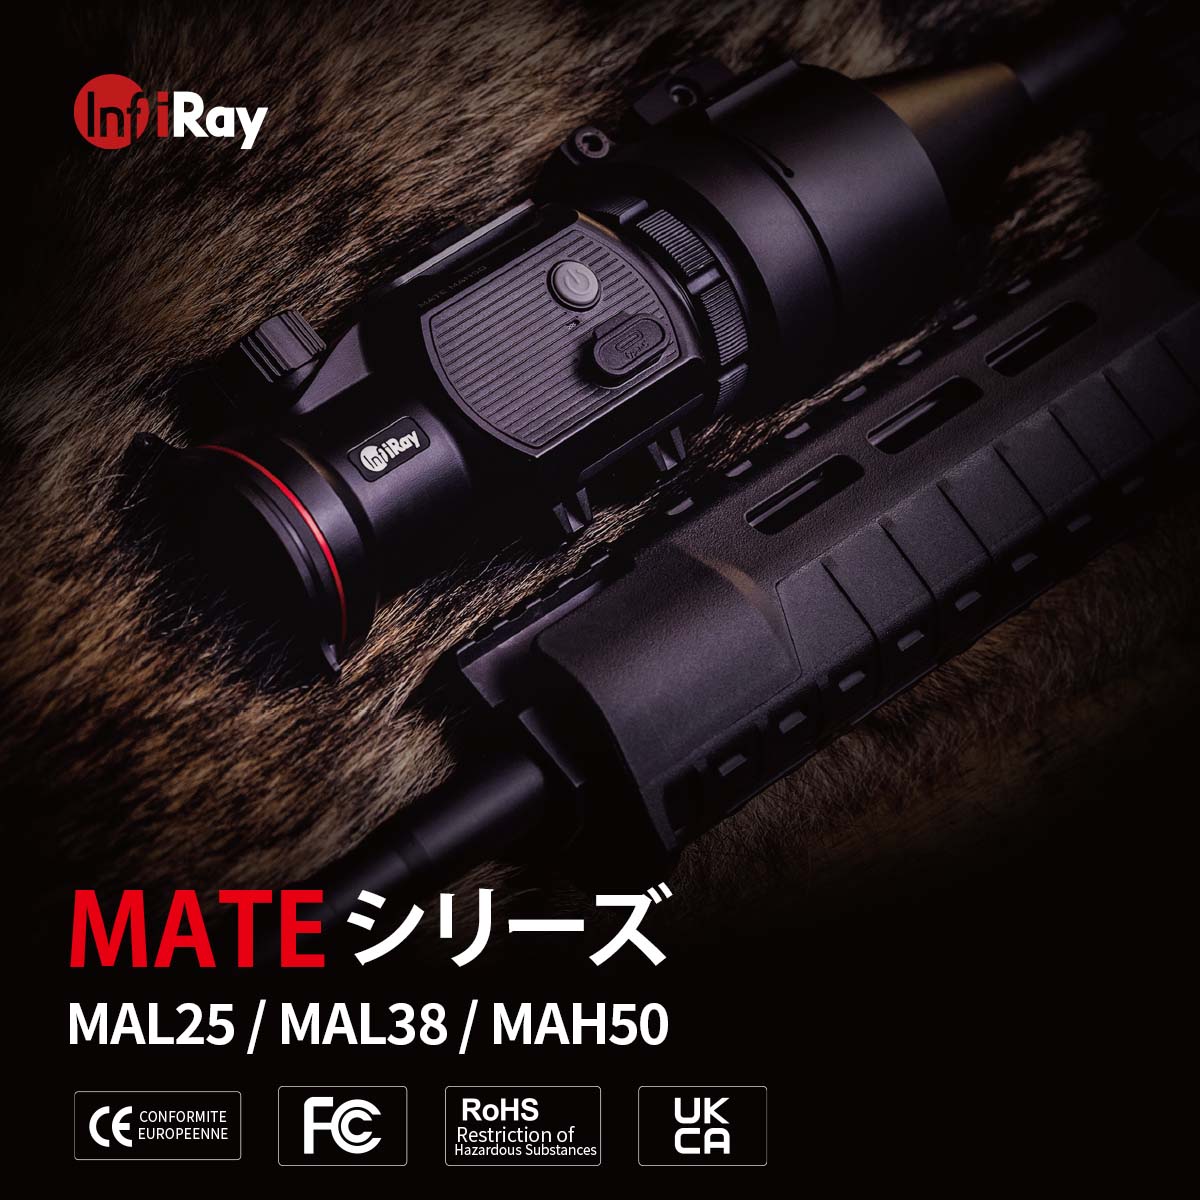 IRAY サーマルイメージング・アタッチメント MATEシリーズ MAL38 光学機器,暗視スコープ タイムテクノロジー公式ショップ